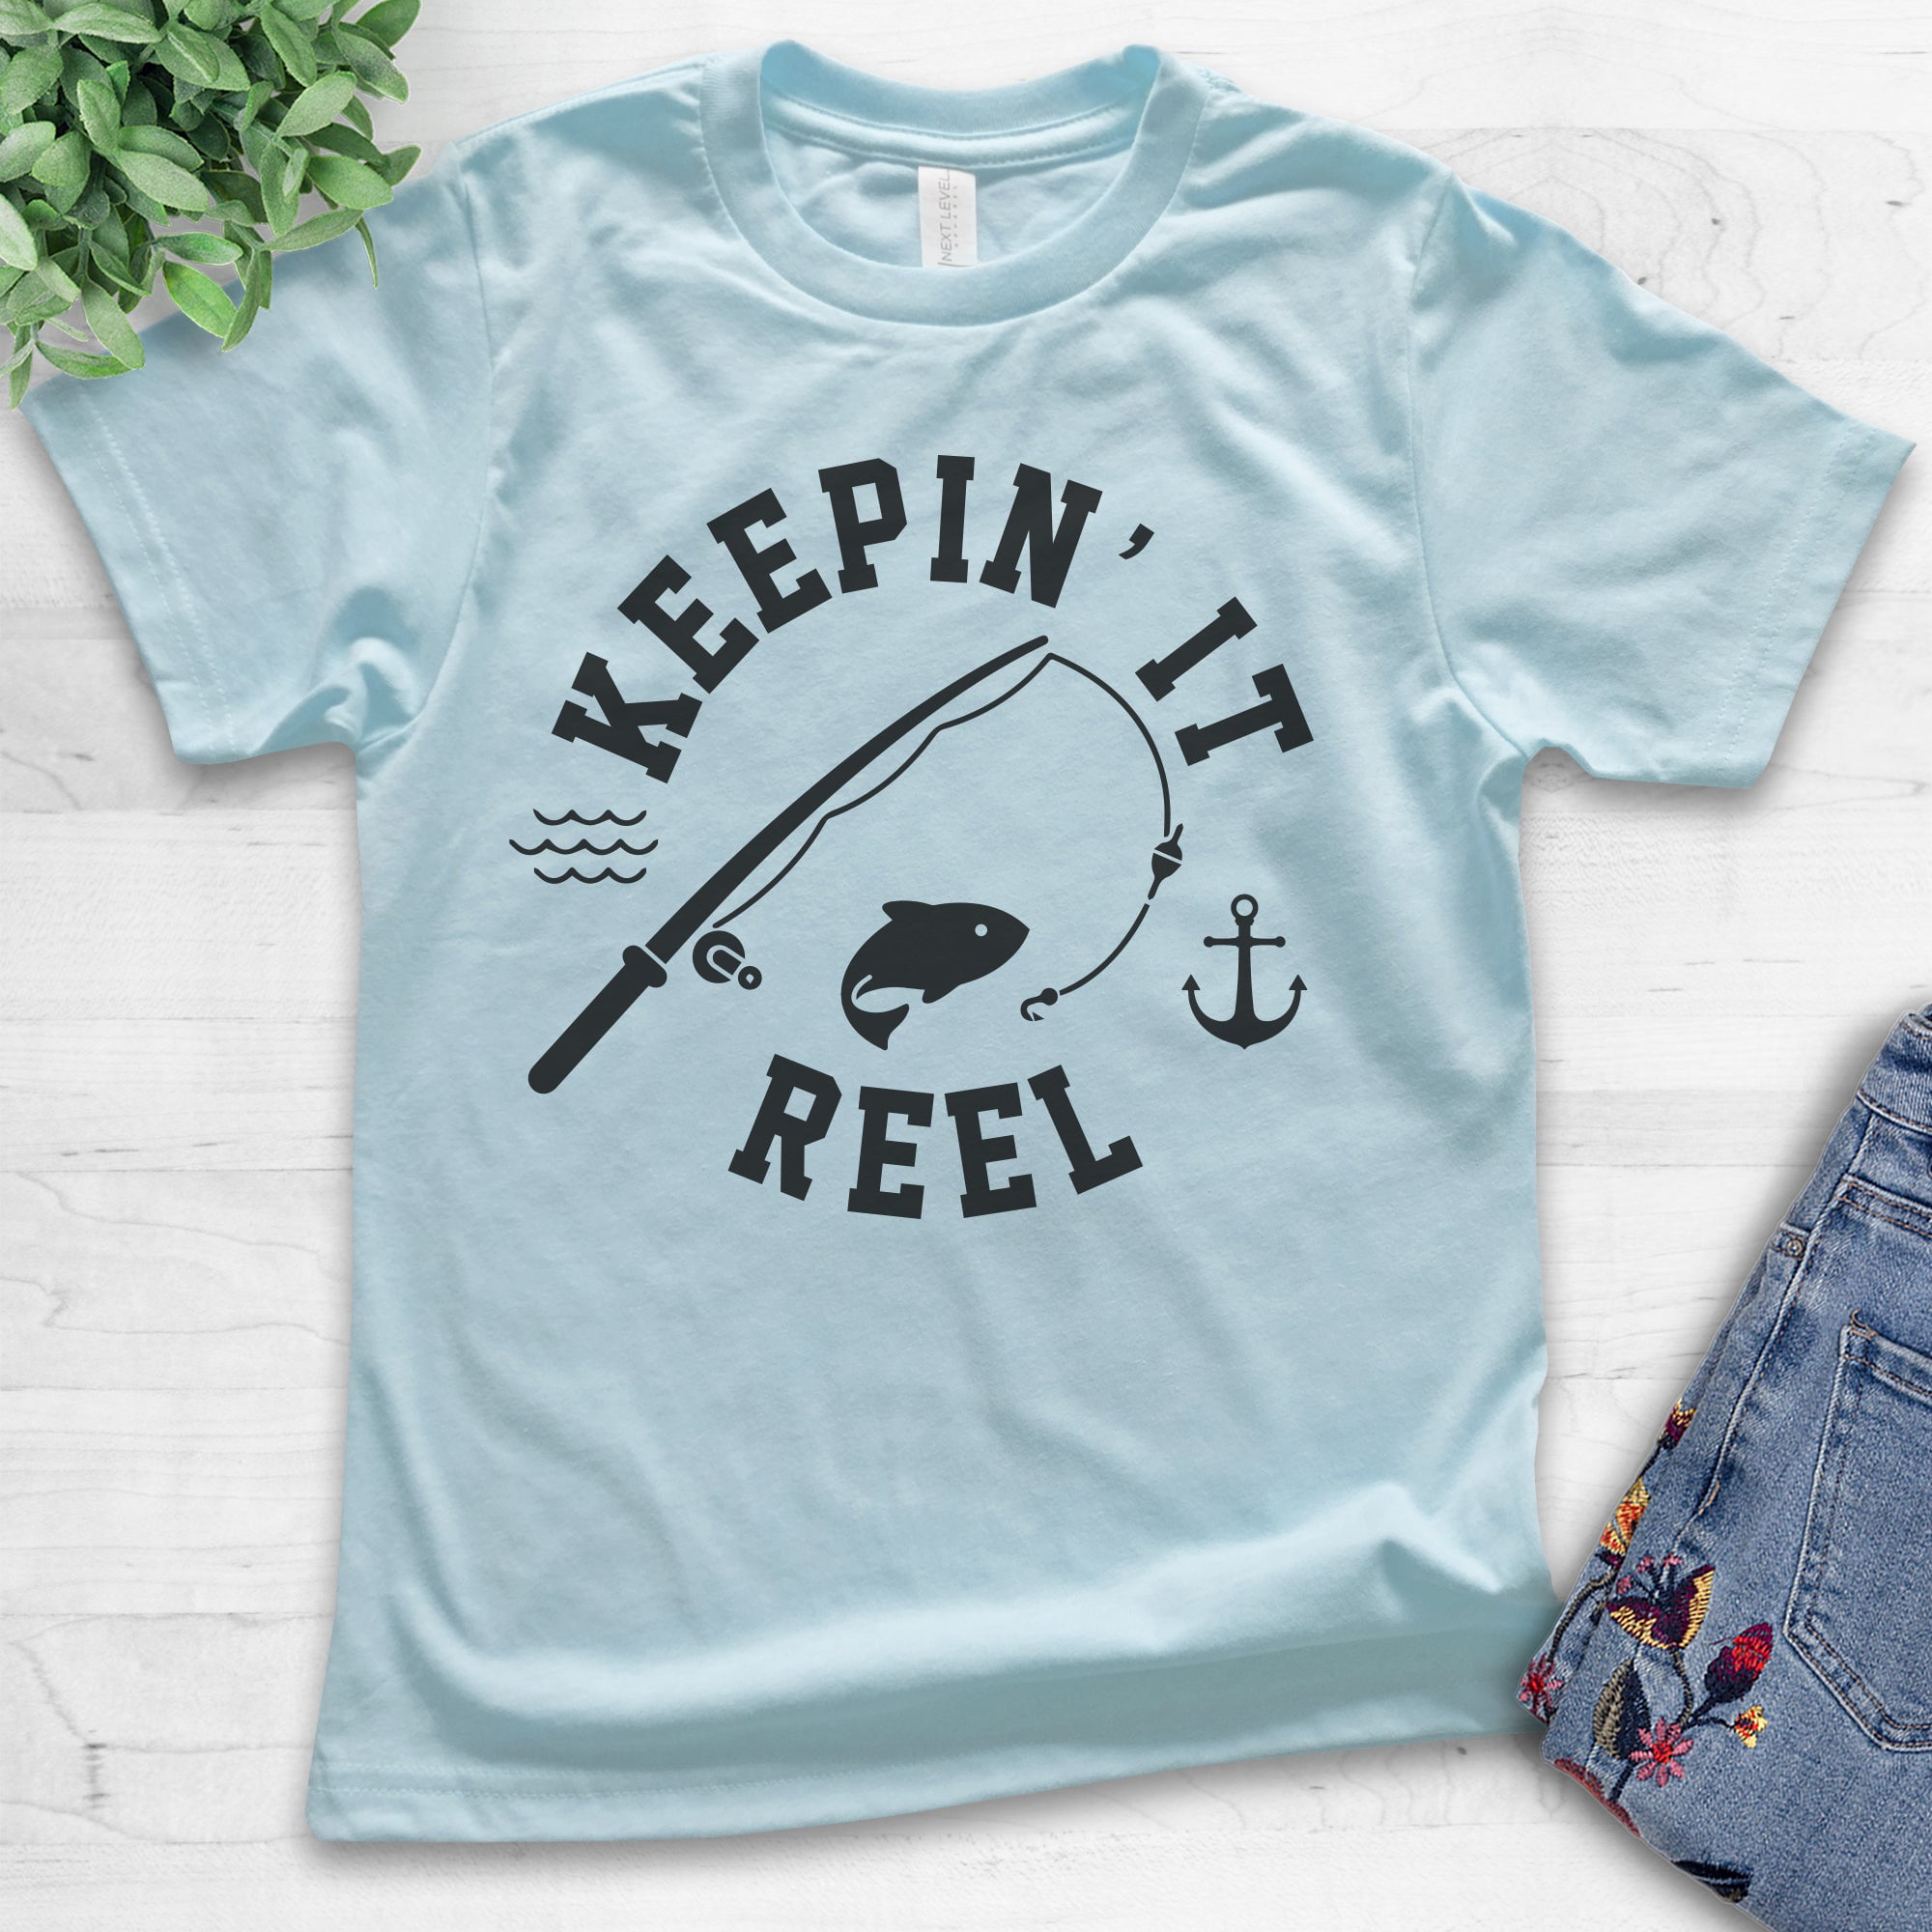 Kids Keepin' It Reel Shirt, Youth Kids Boy Girl T-Shirt, Fishing Shirt